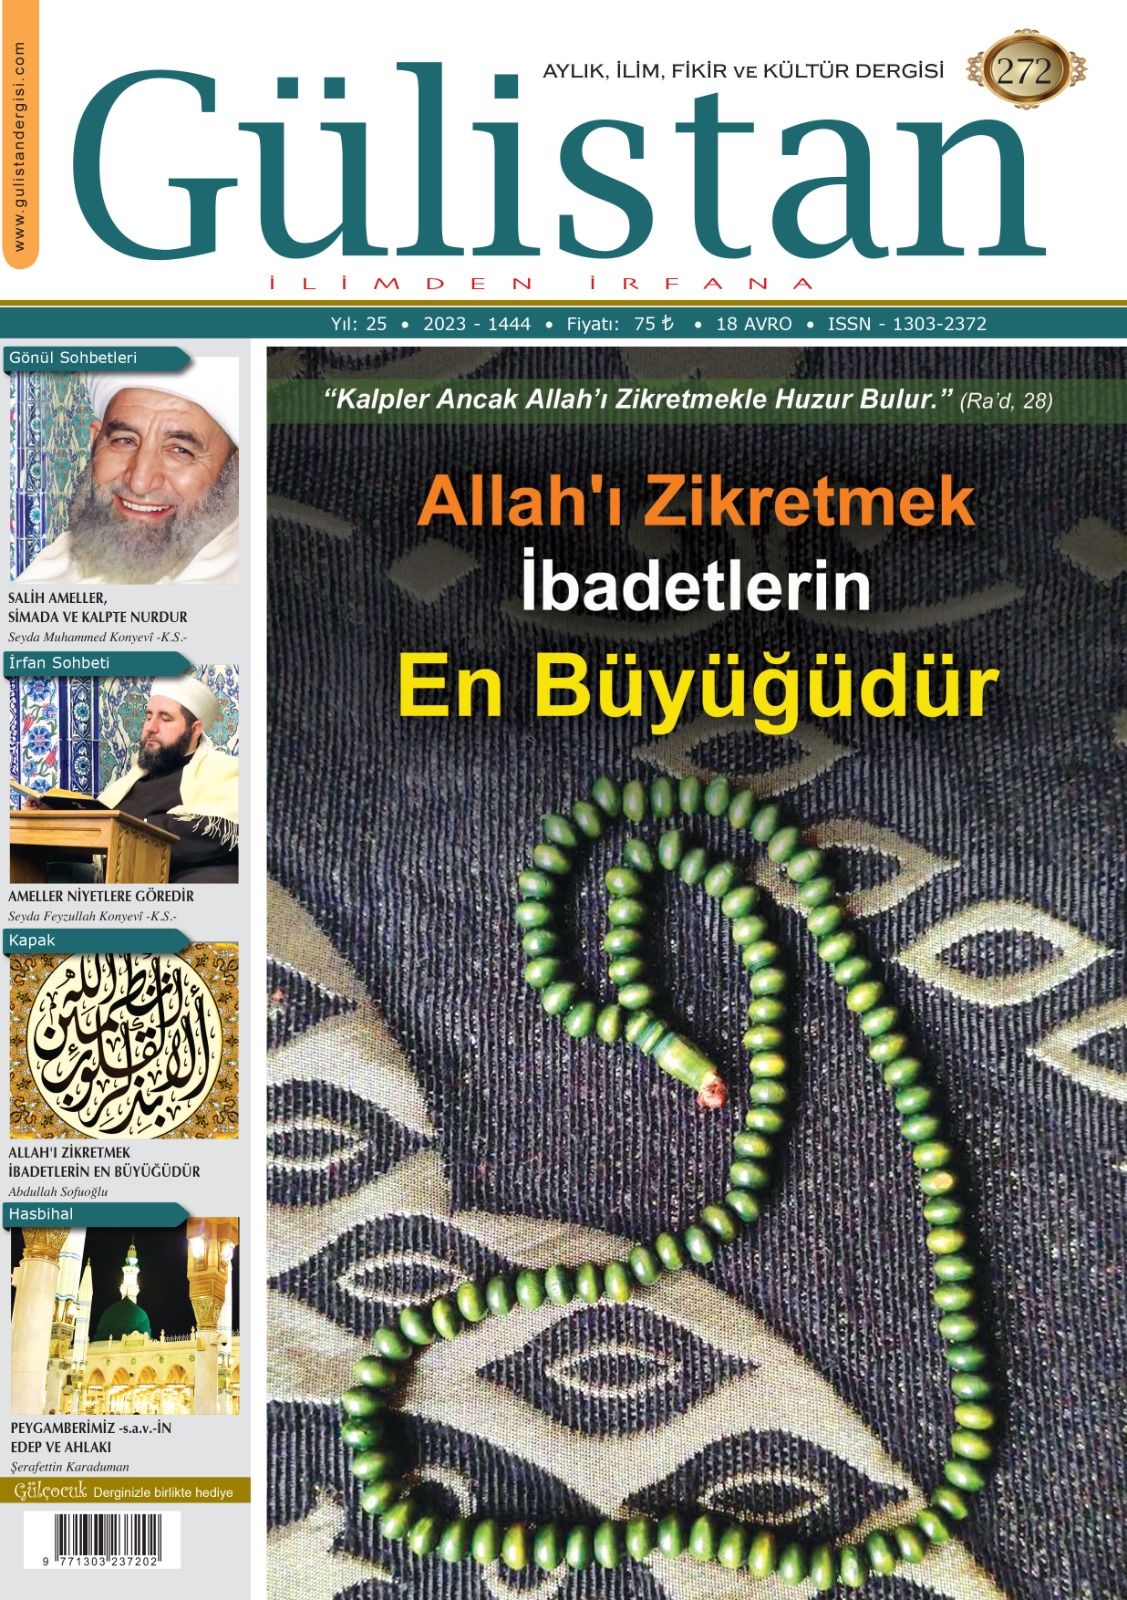 Aylık,İlim,Fikir ve Kültür Gülistan Dergisi  272. Sayı